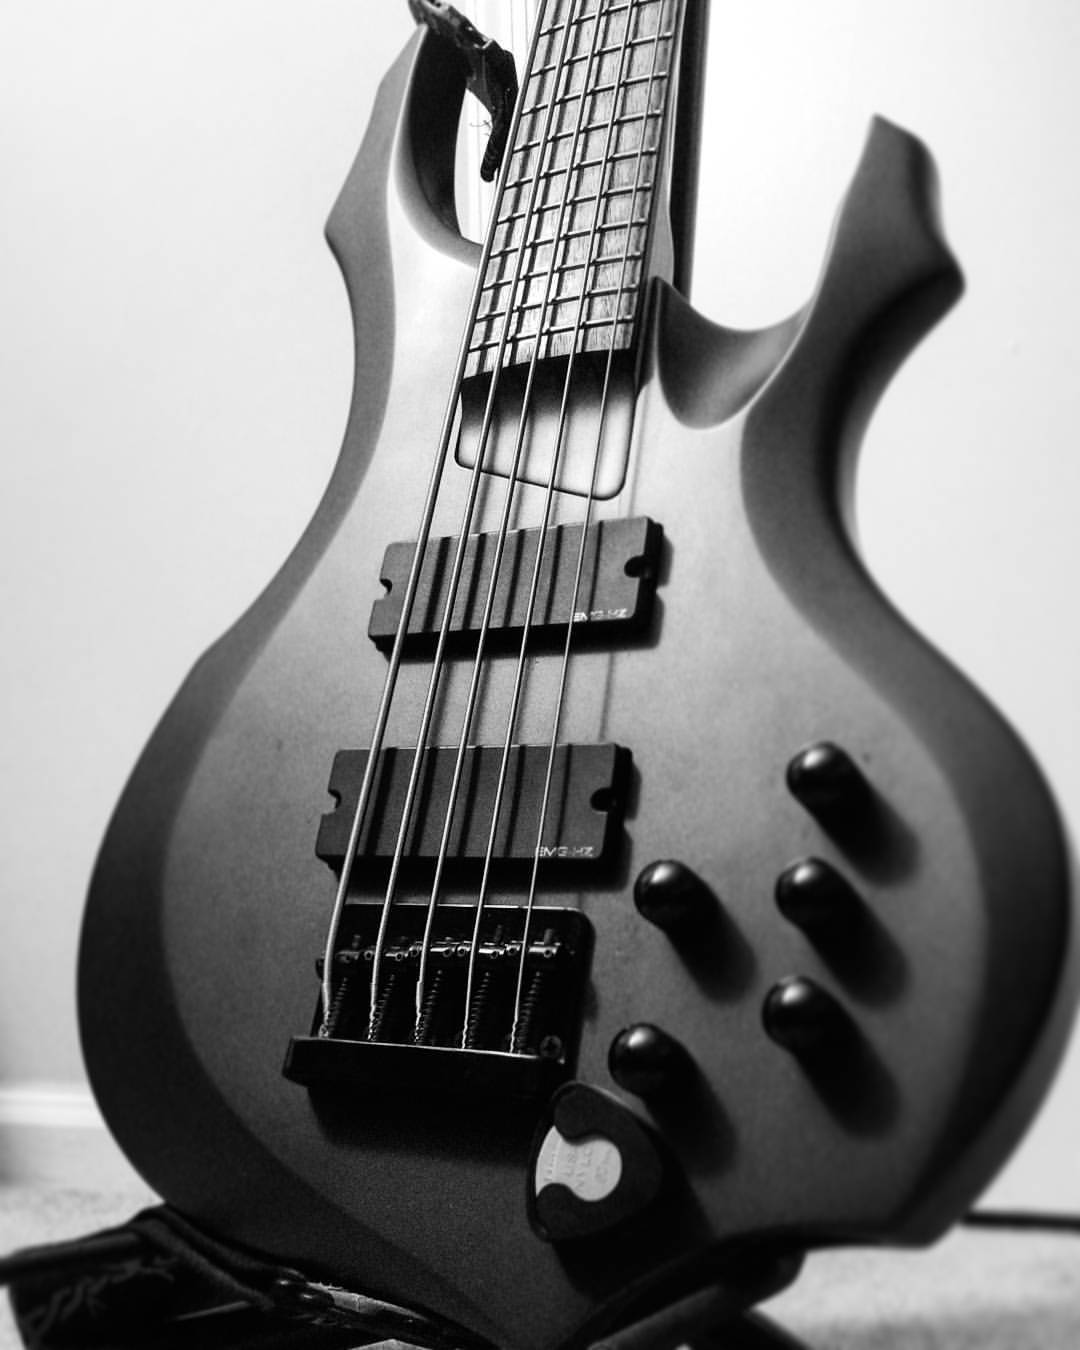 Abxxx - 8 Guitar Strings Minimum